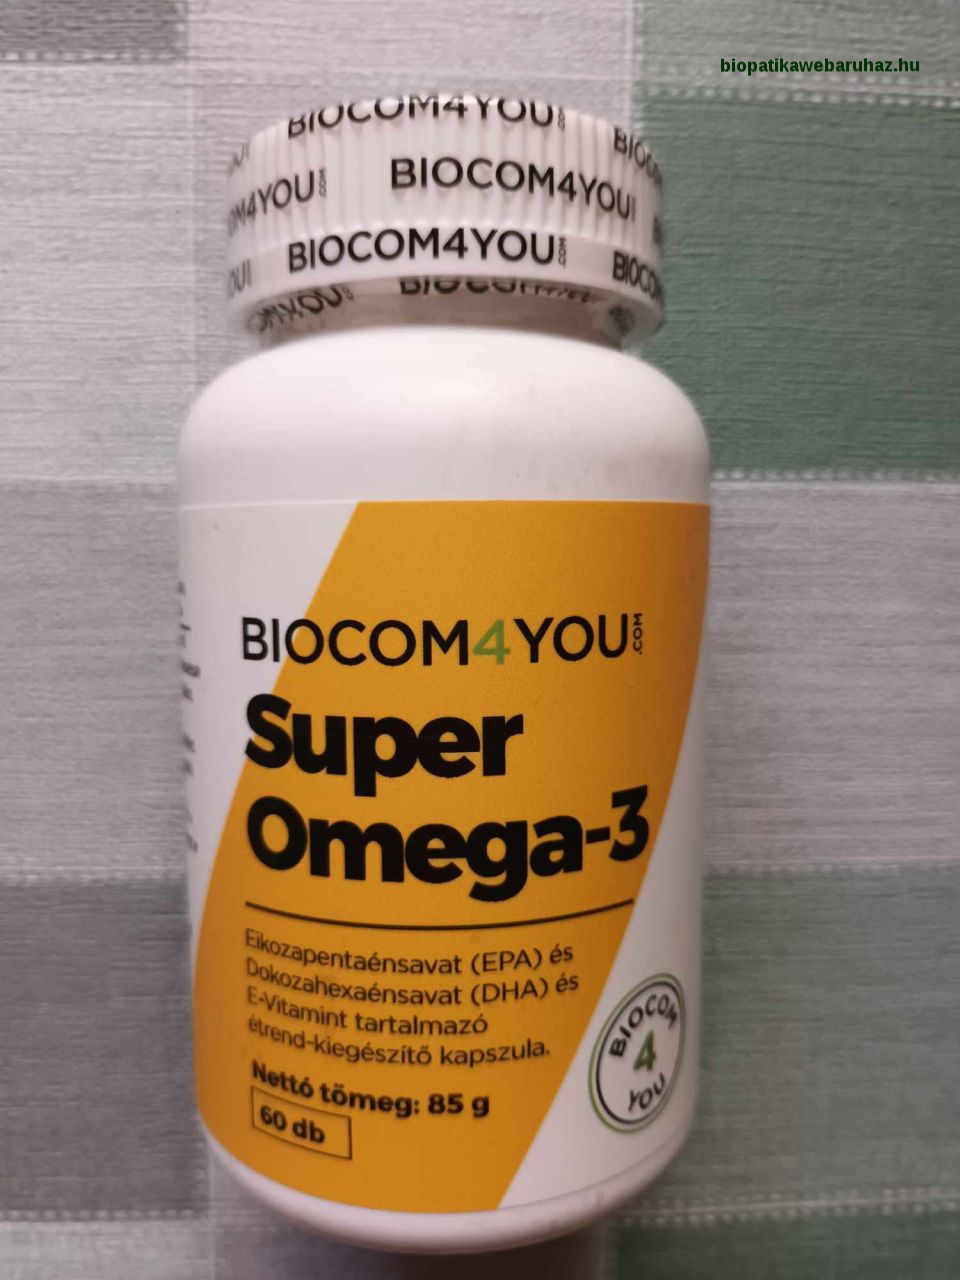 SUPER OMEGA 3 HALOLAJ - Biocom